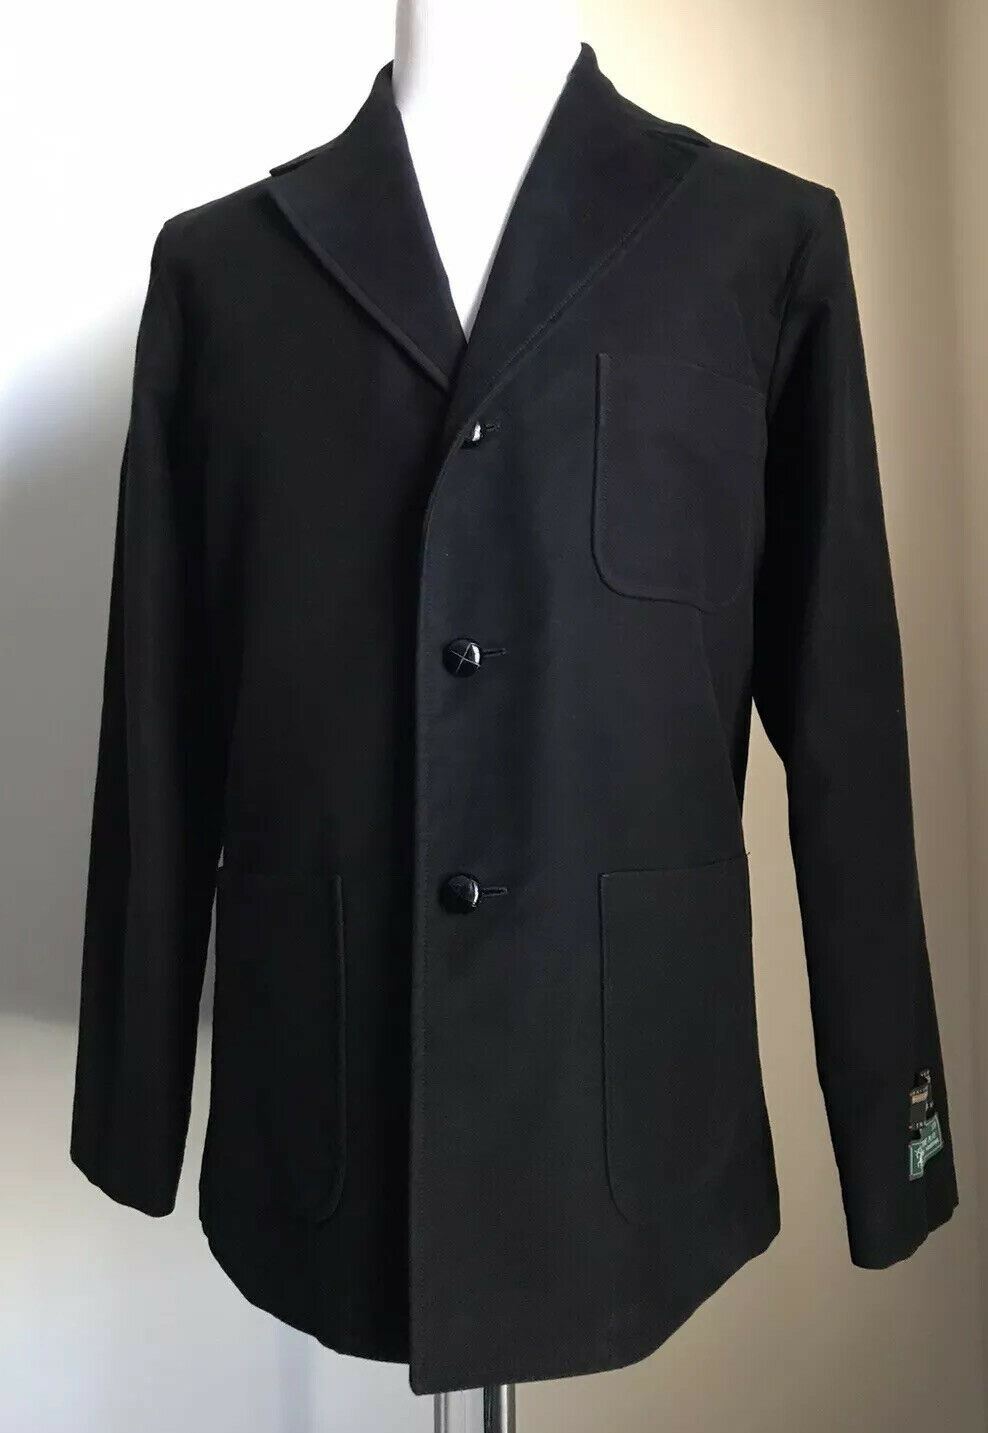 Новое мужское пальто большого размера из хлопка с молескином от Gucci за 2400 долларов США, черный 42 США/52 ЕС